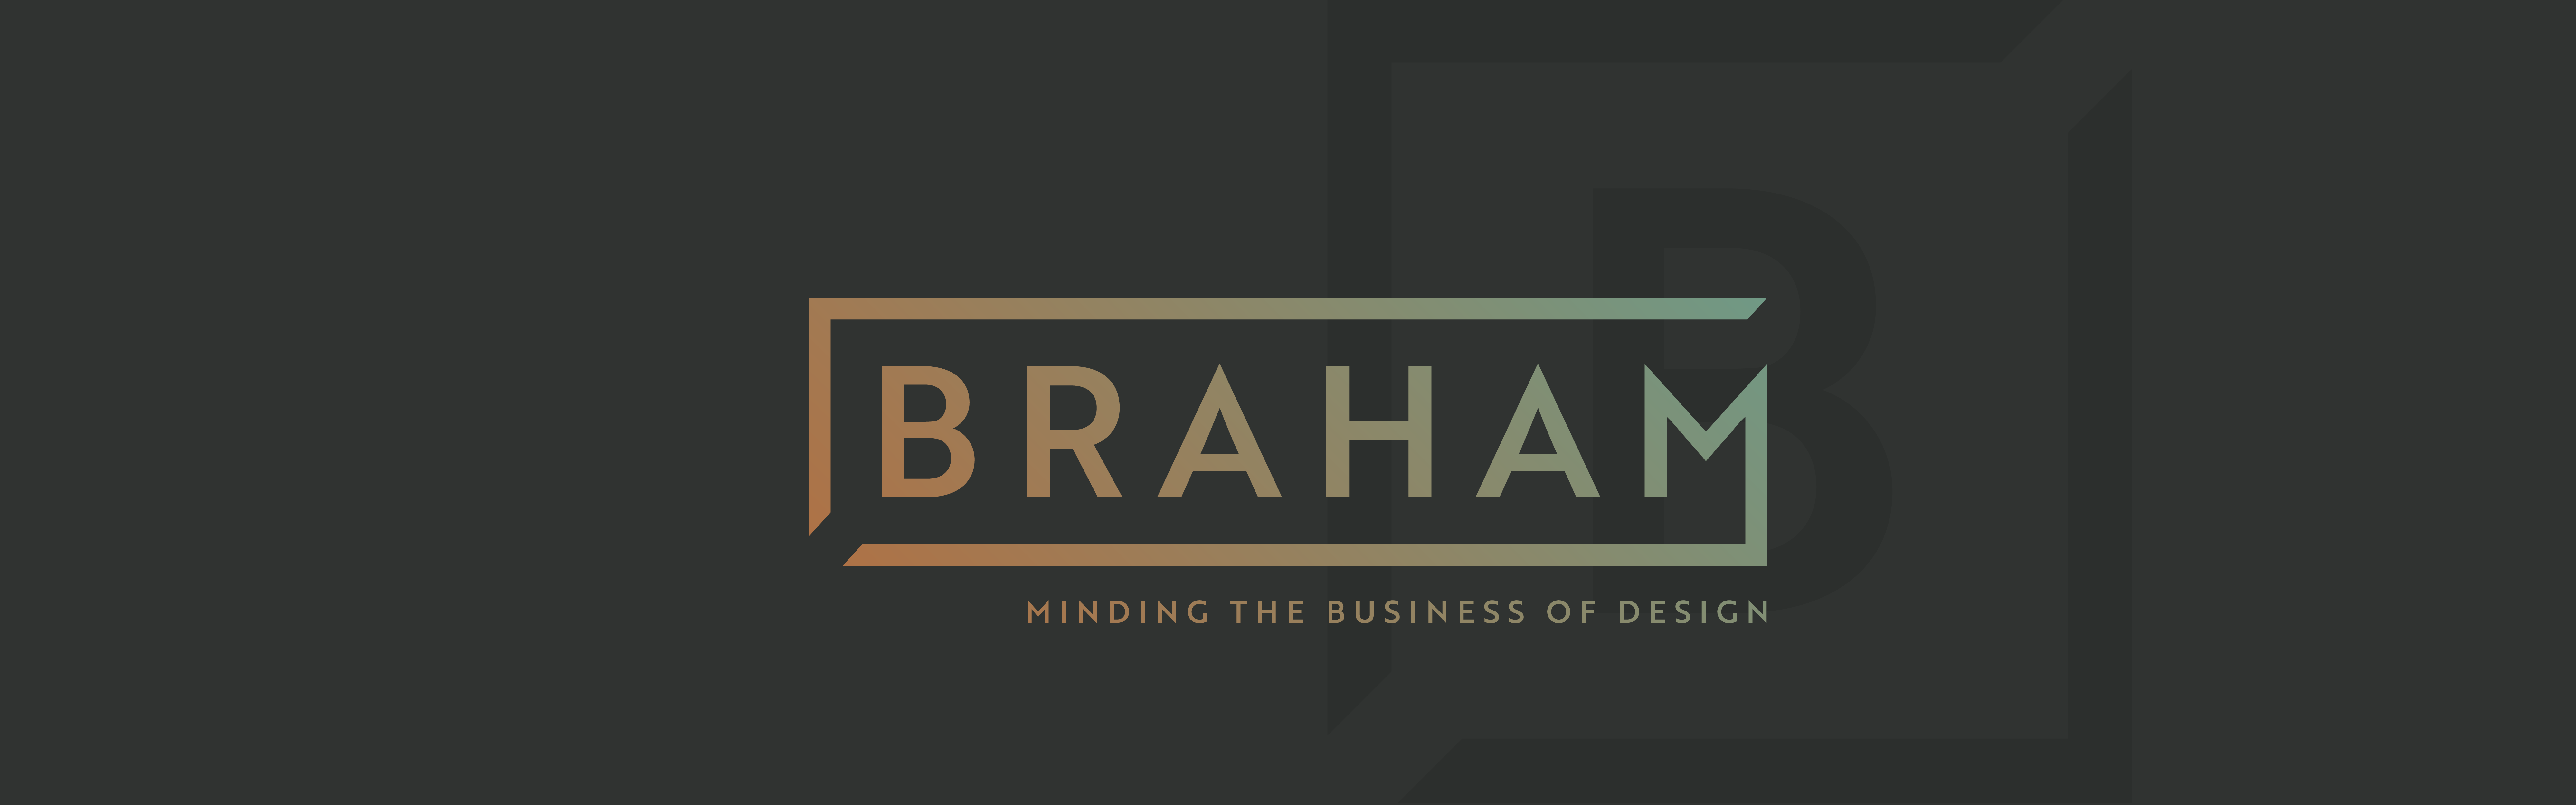 Braham logo design